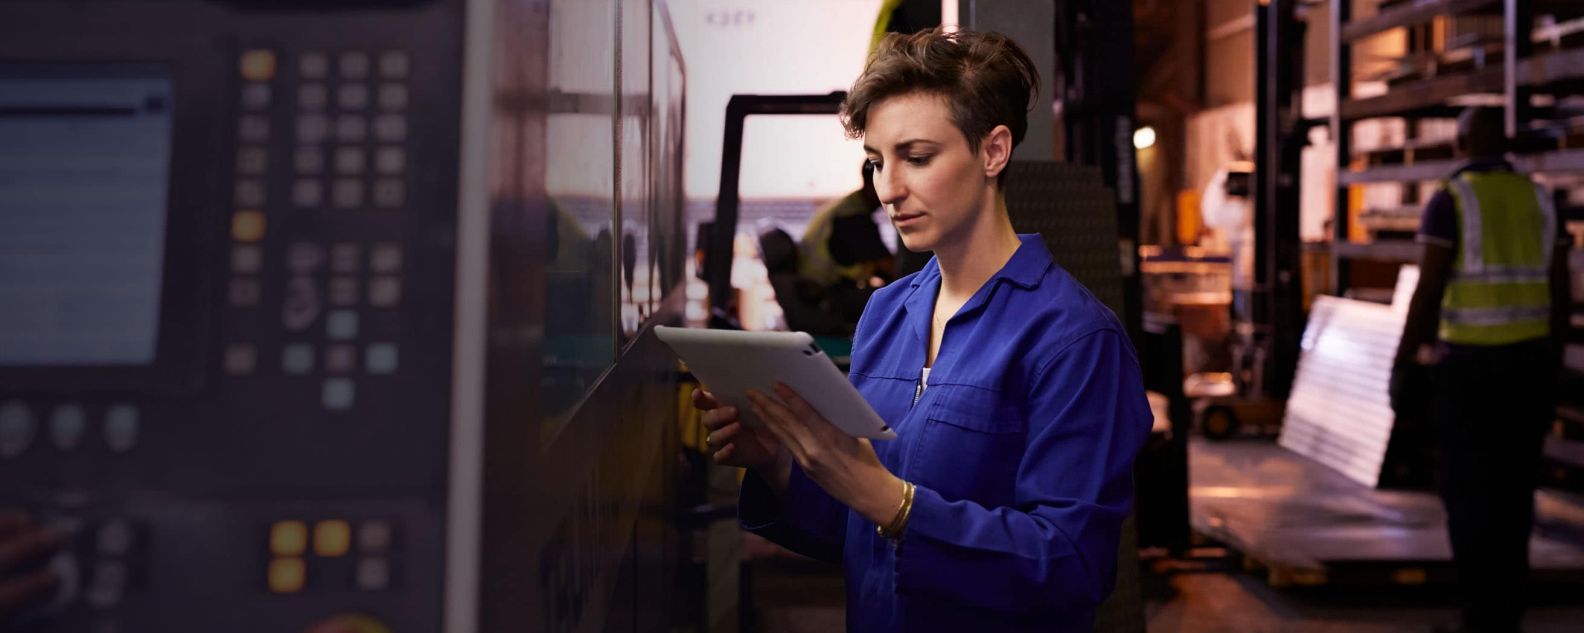 Femme regardant un ordinateur portable dans une usine